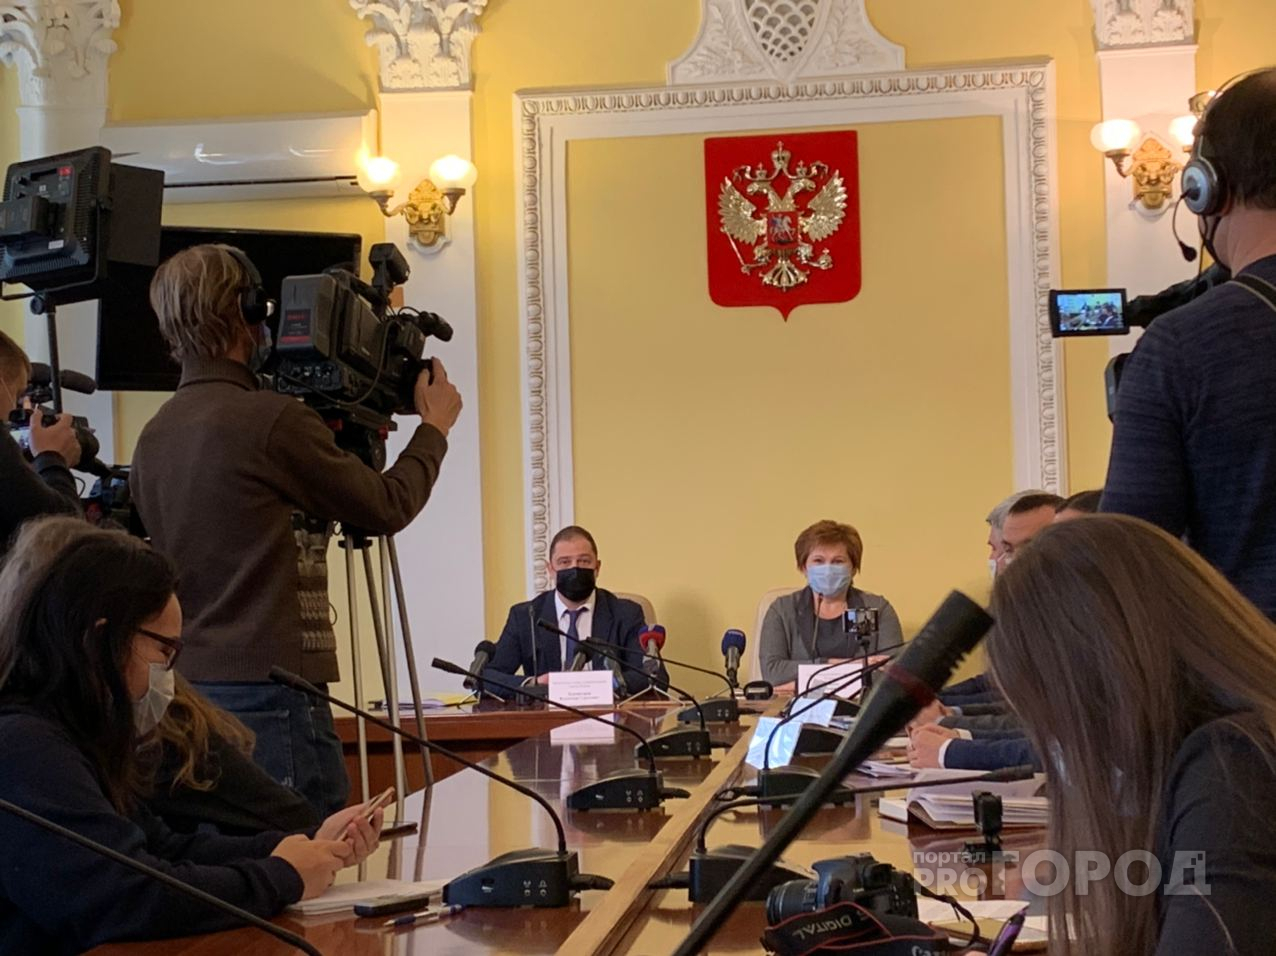 Заммэра отказался говорить про Караулова: итоги пресс-конференции по вопросам городского хозяйства